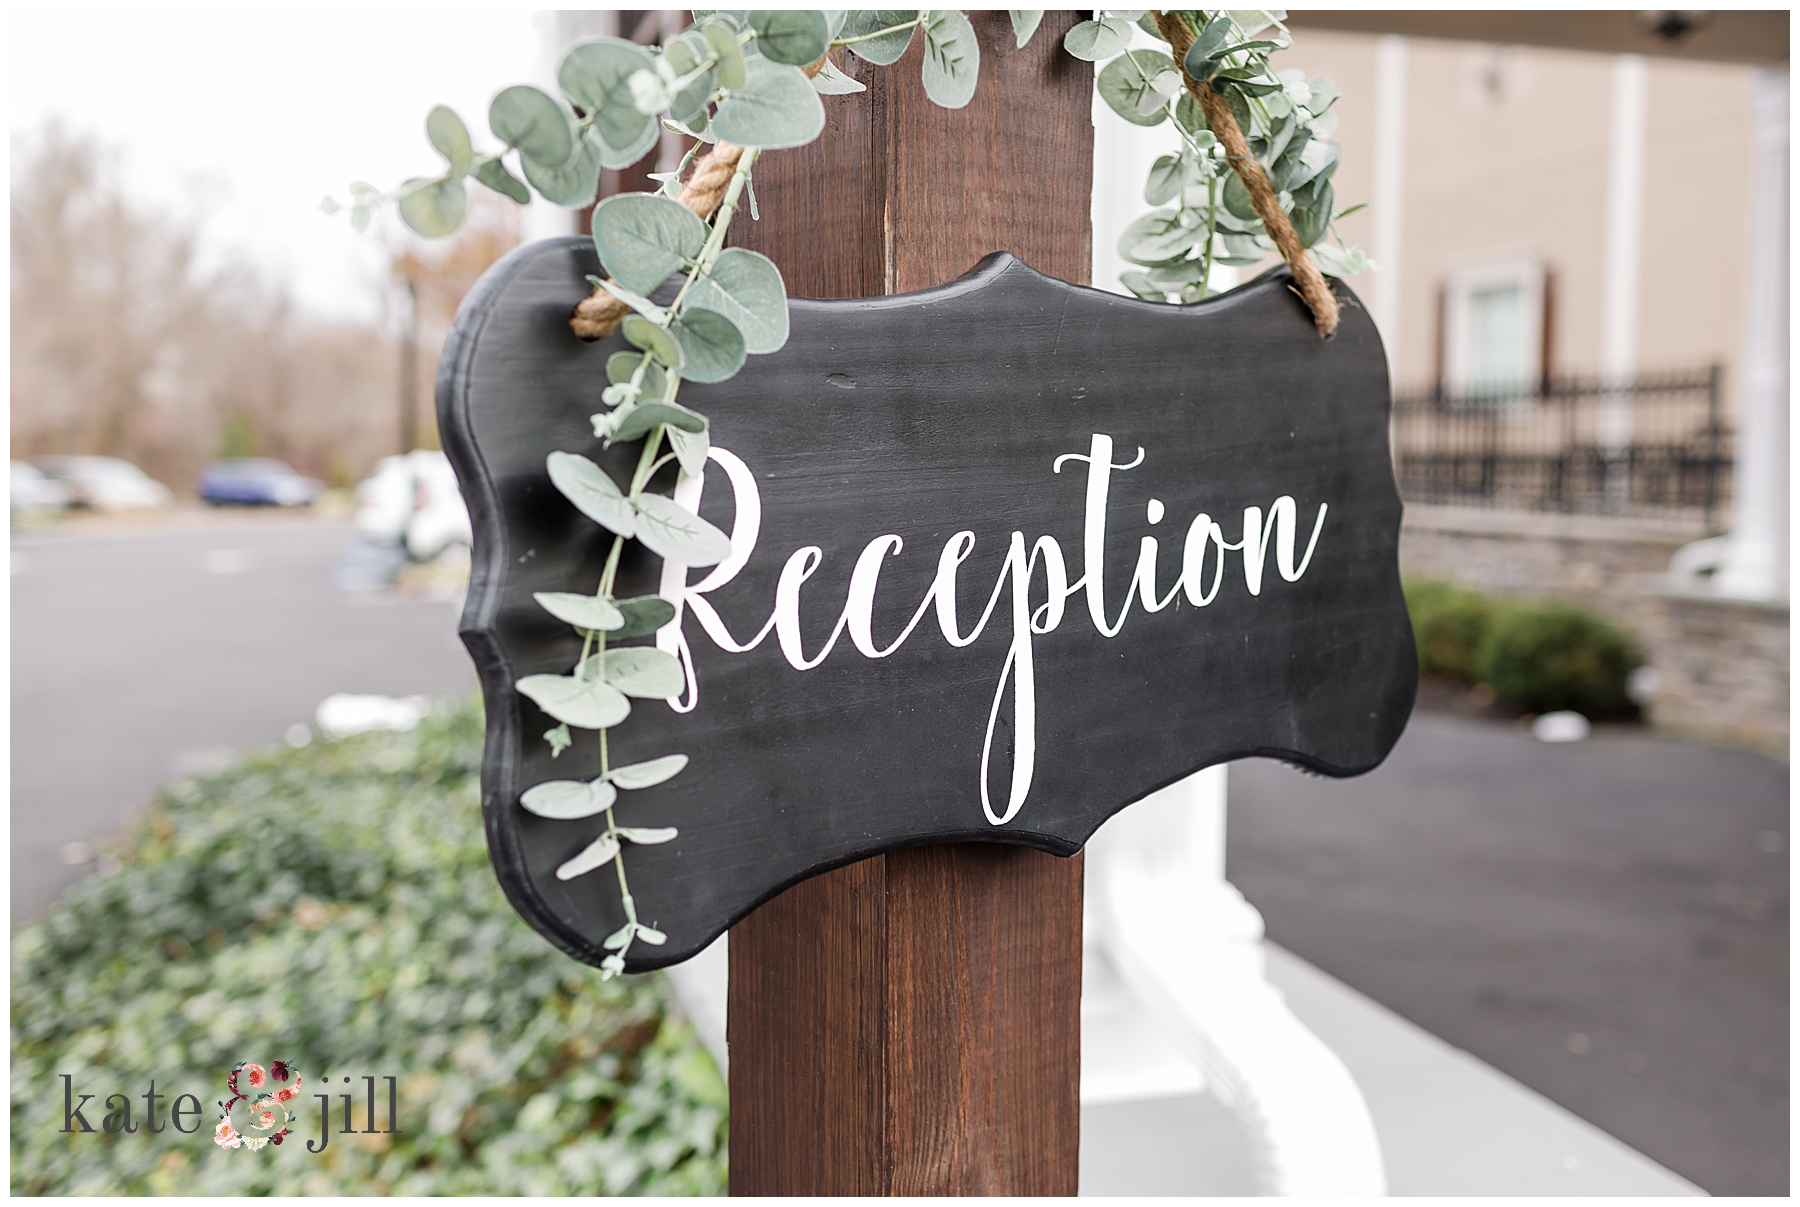 reception details